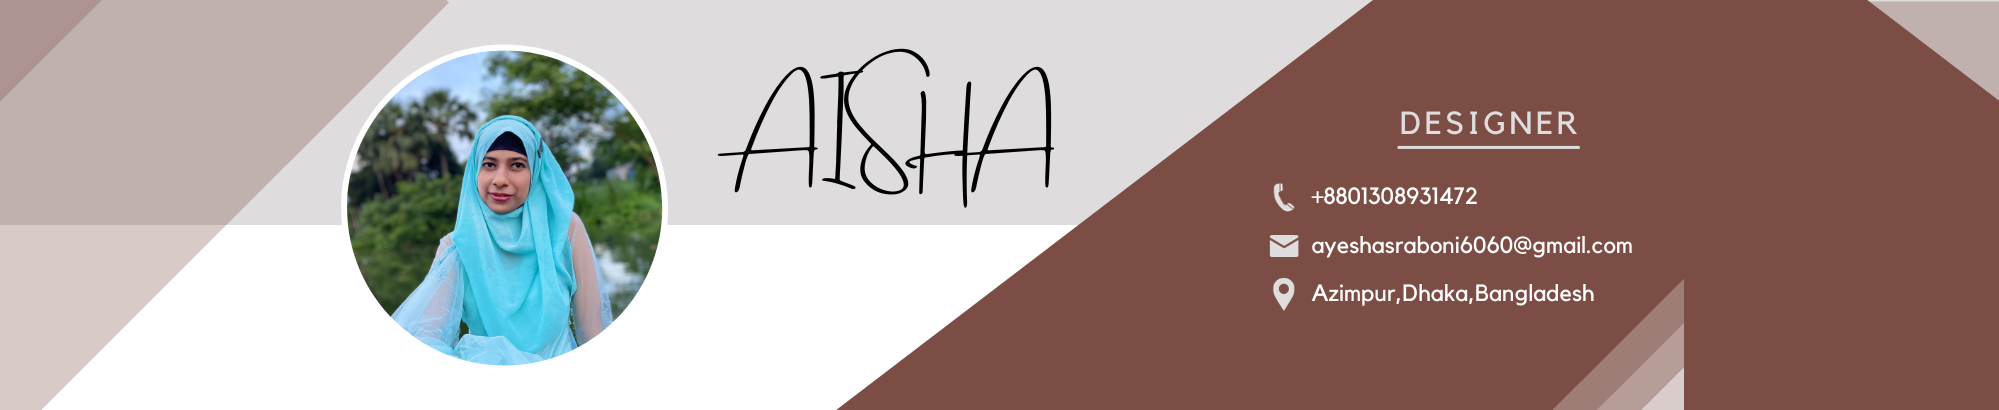 Banner de perfil de Aisha Siddika Sraboni